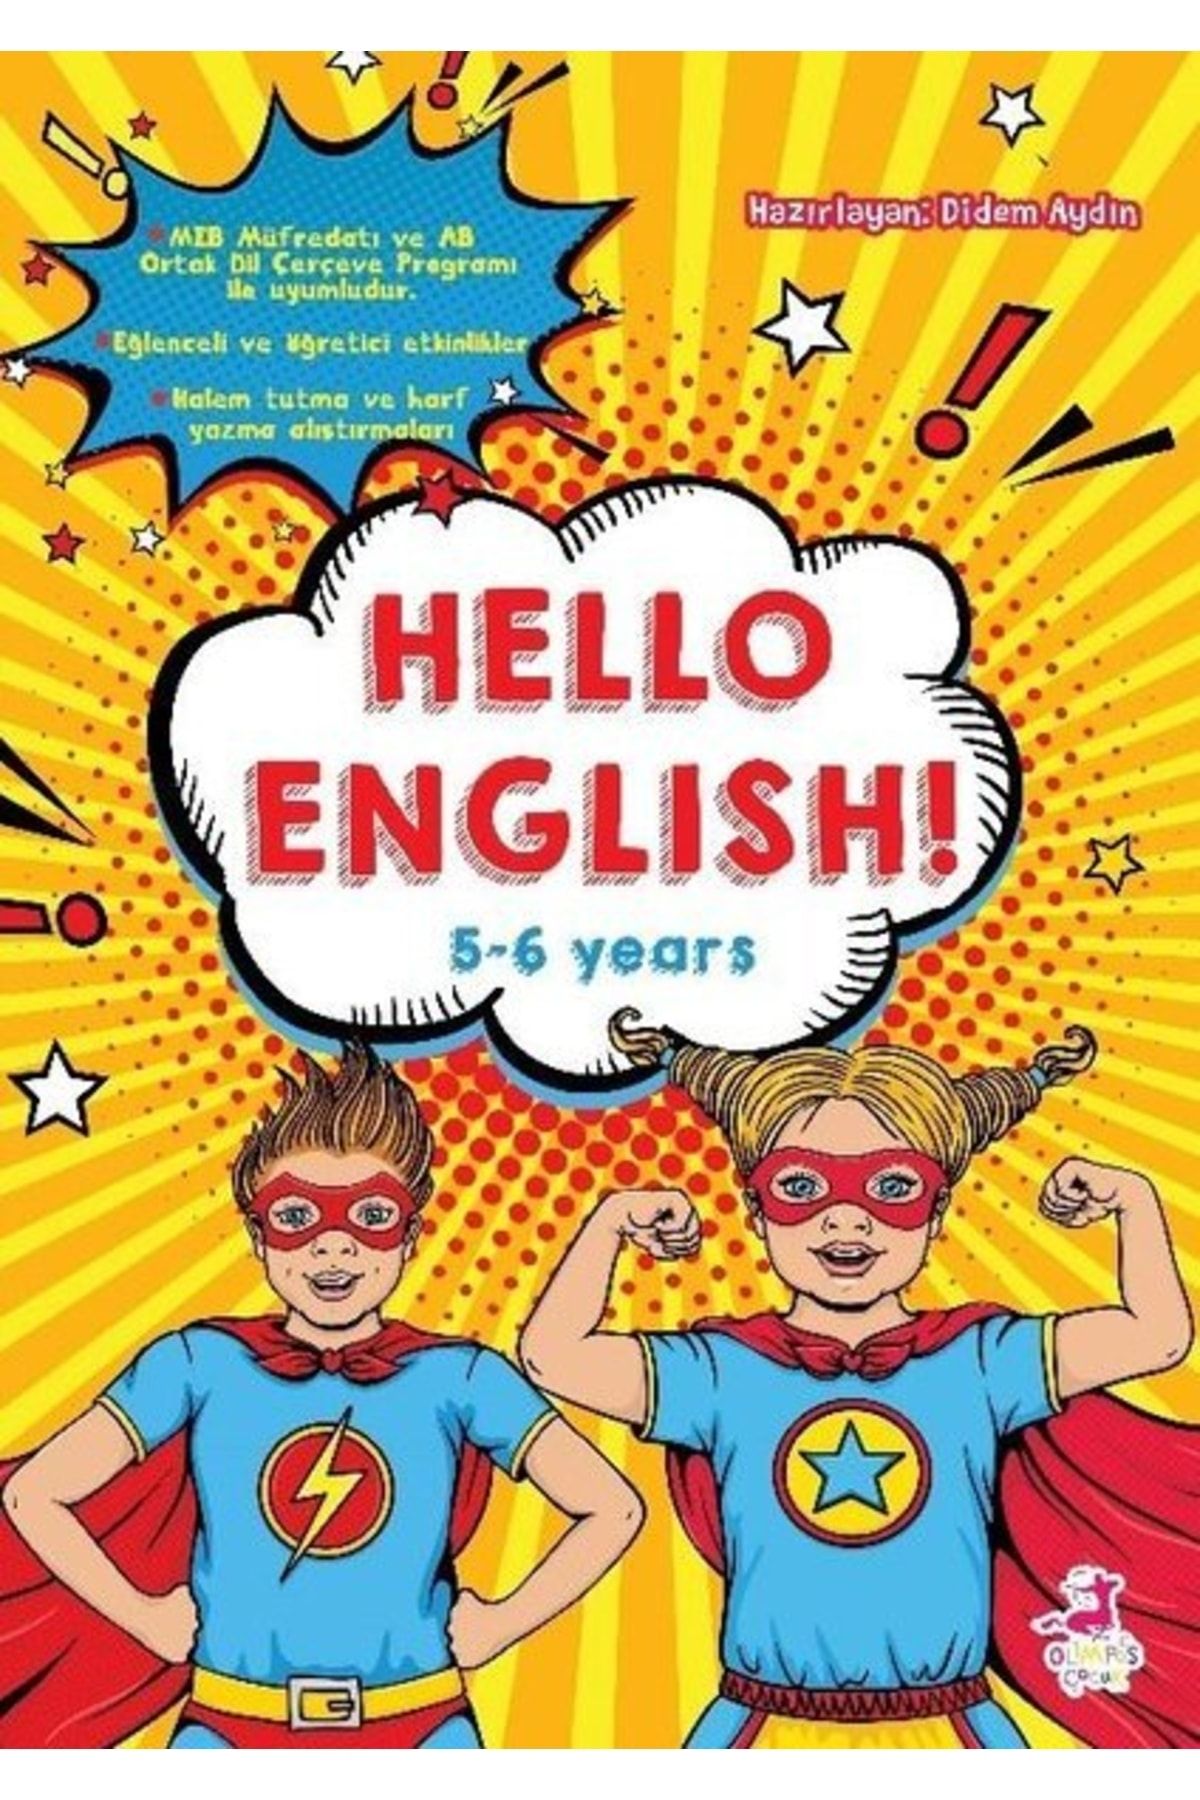 Olimpos Yayınları Hello English! 5-6 Years